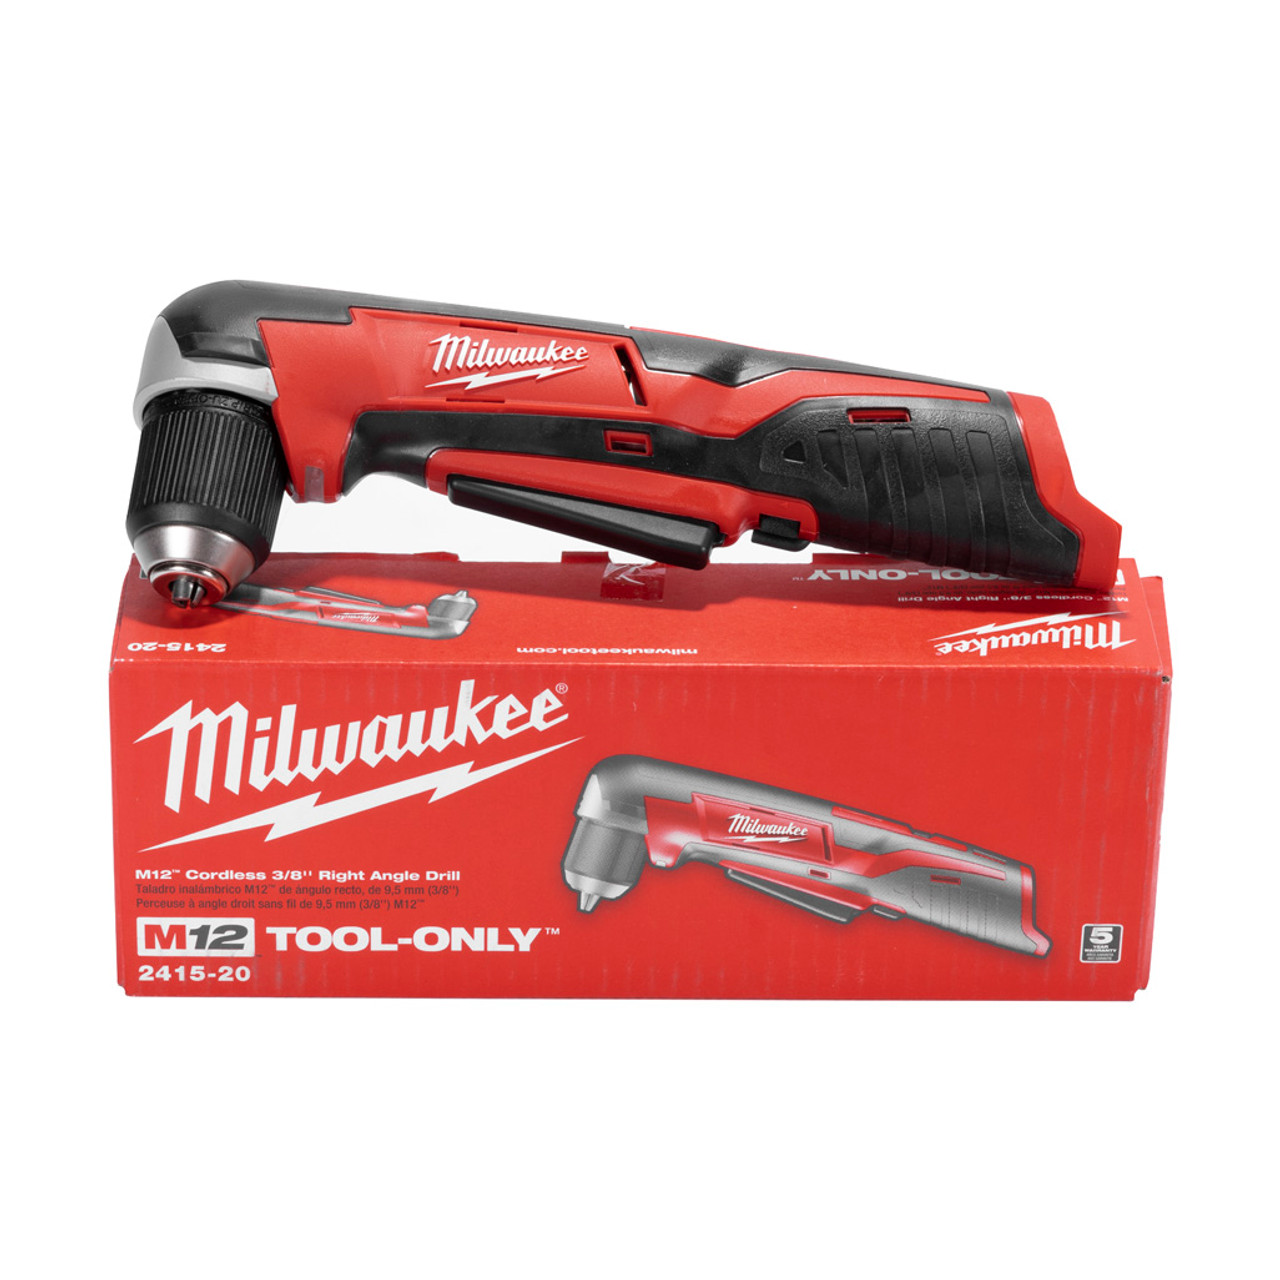 Milwaukee 2415-20 M12 Bare-Tool taladro e impulsor de ángulo derecho  inalámbrico, de 0.75 pulgadas, 12 V; sólo herramienta, sin batería